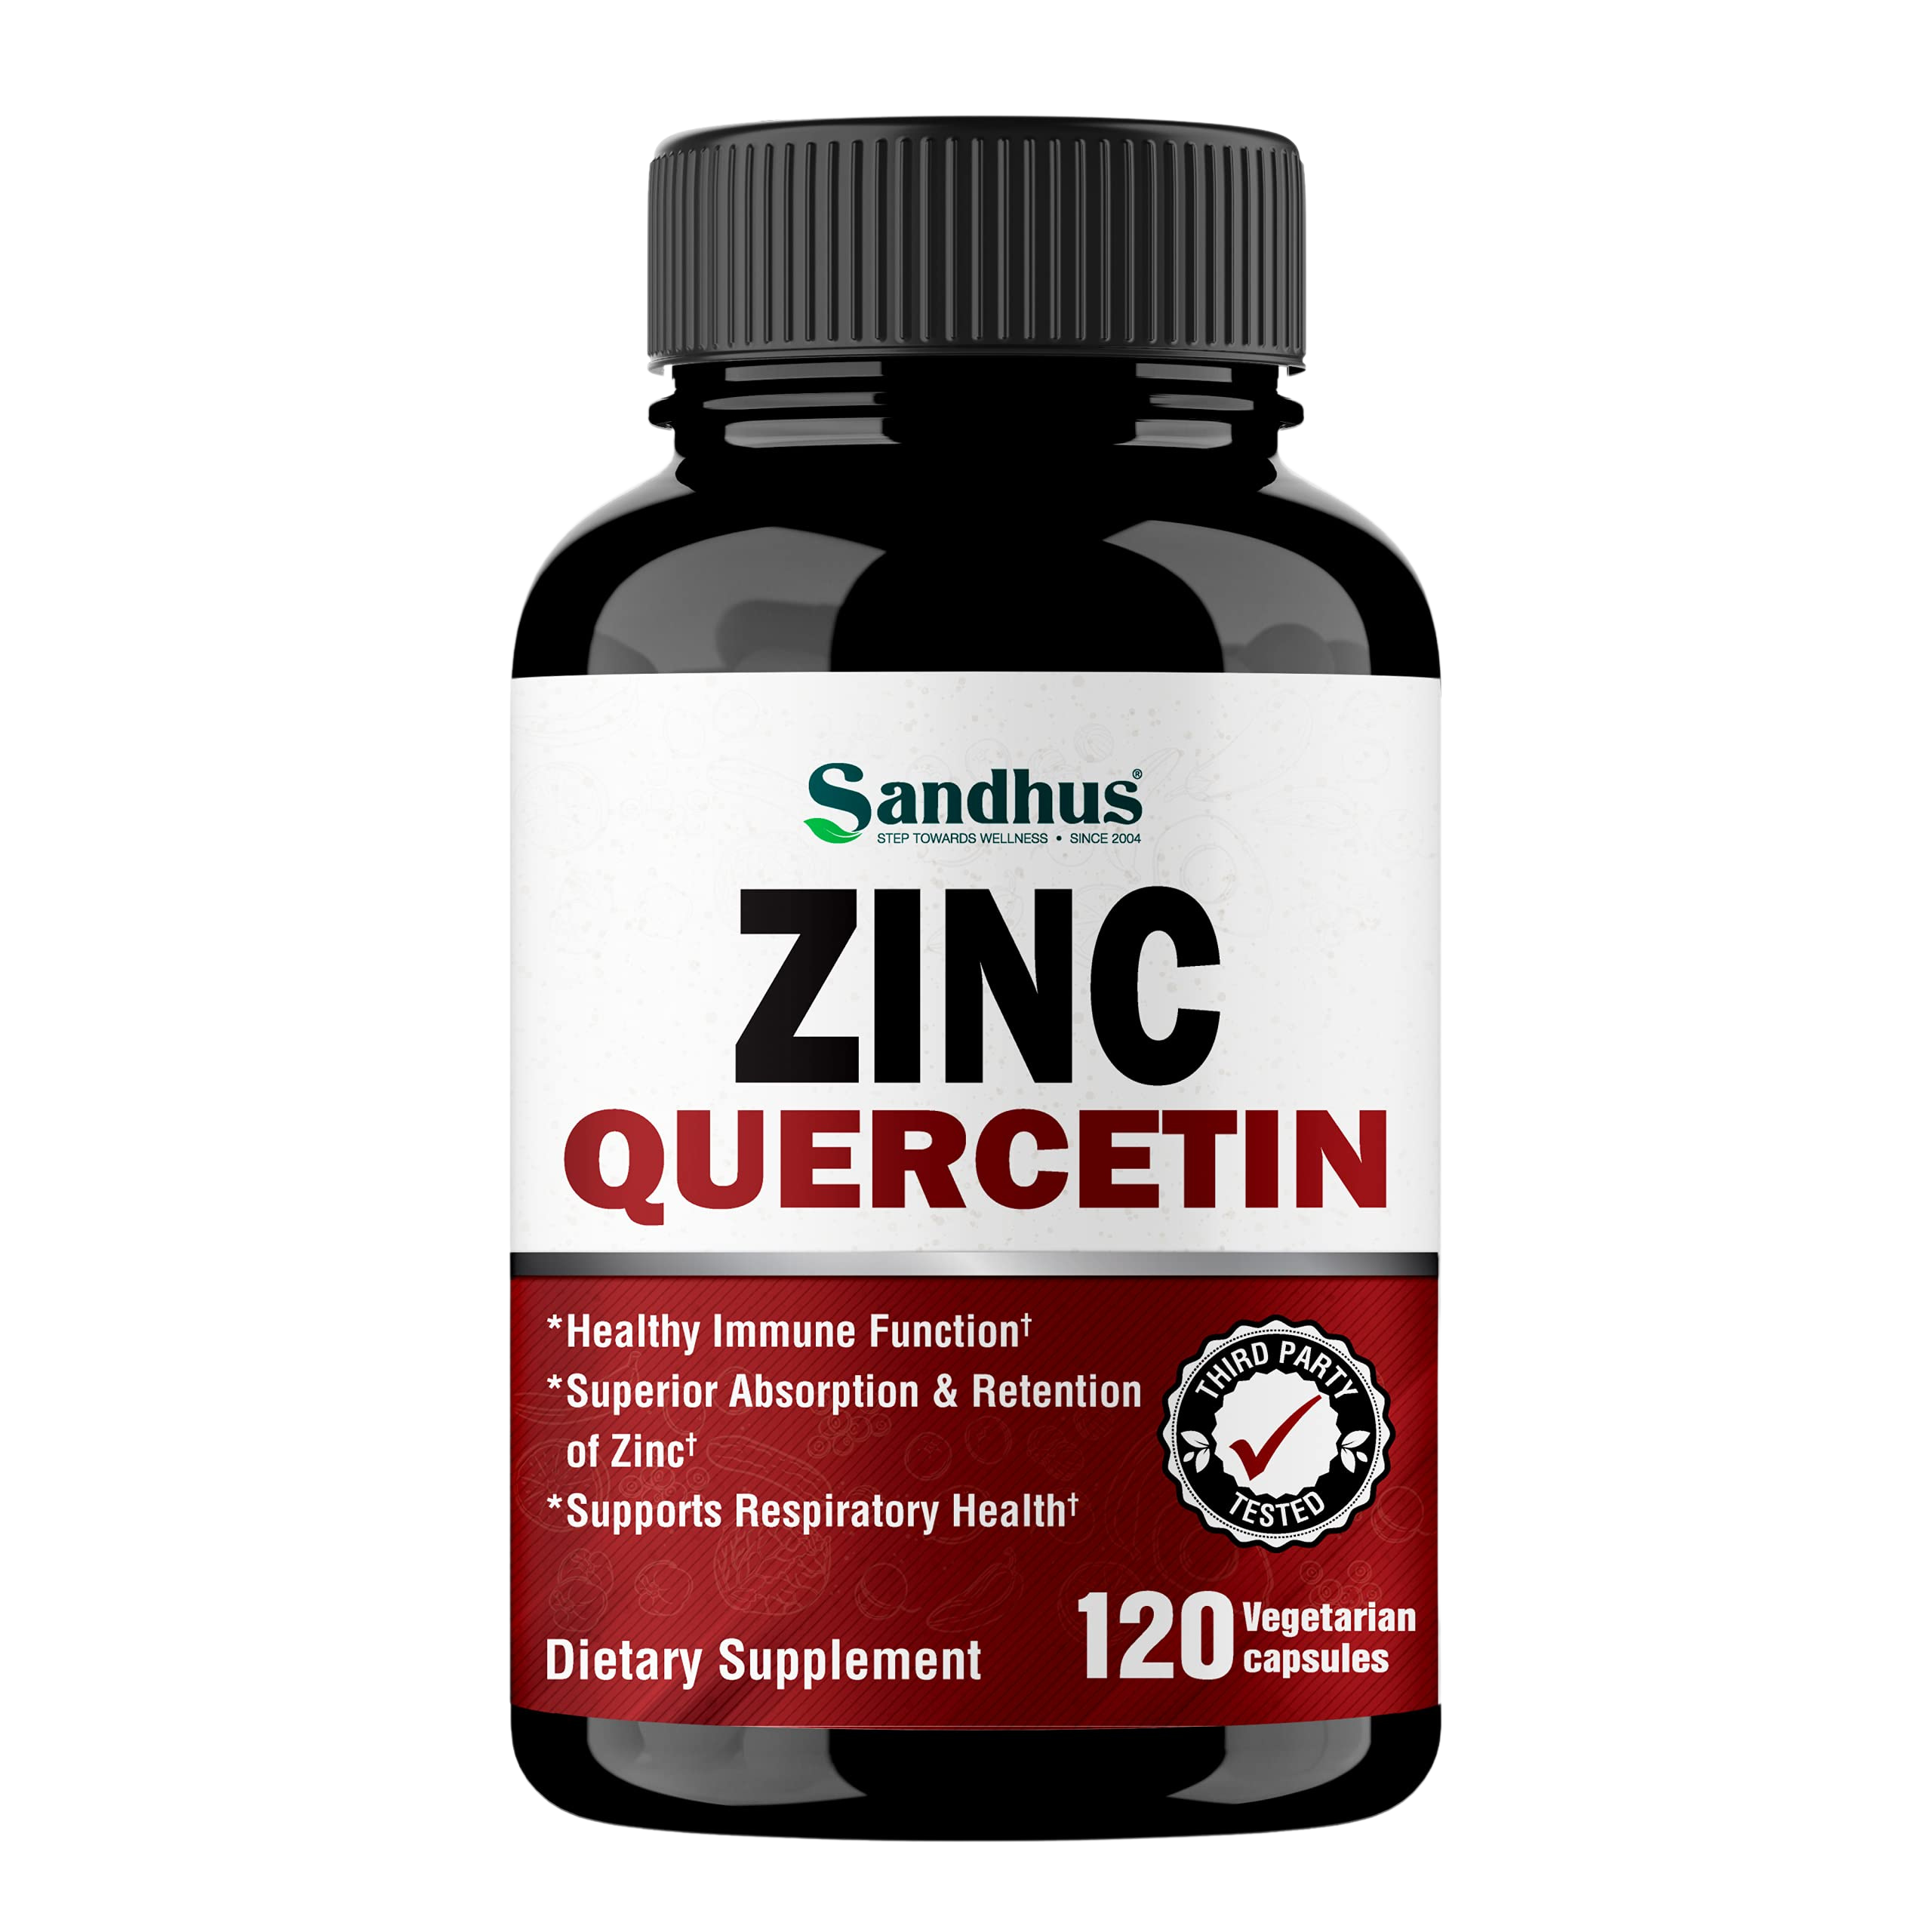 Sandhu's Zinc Quercetin Supplement